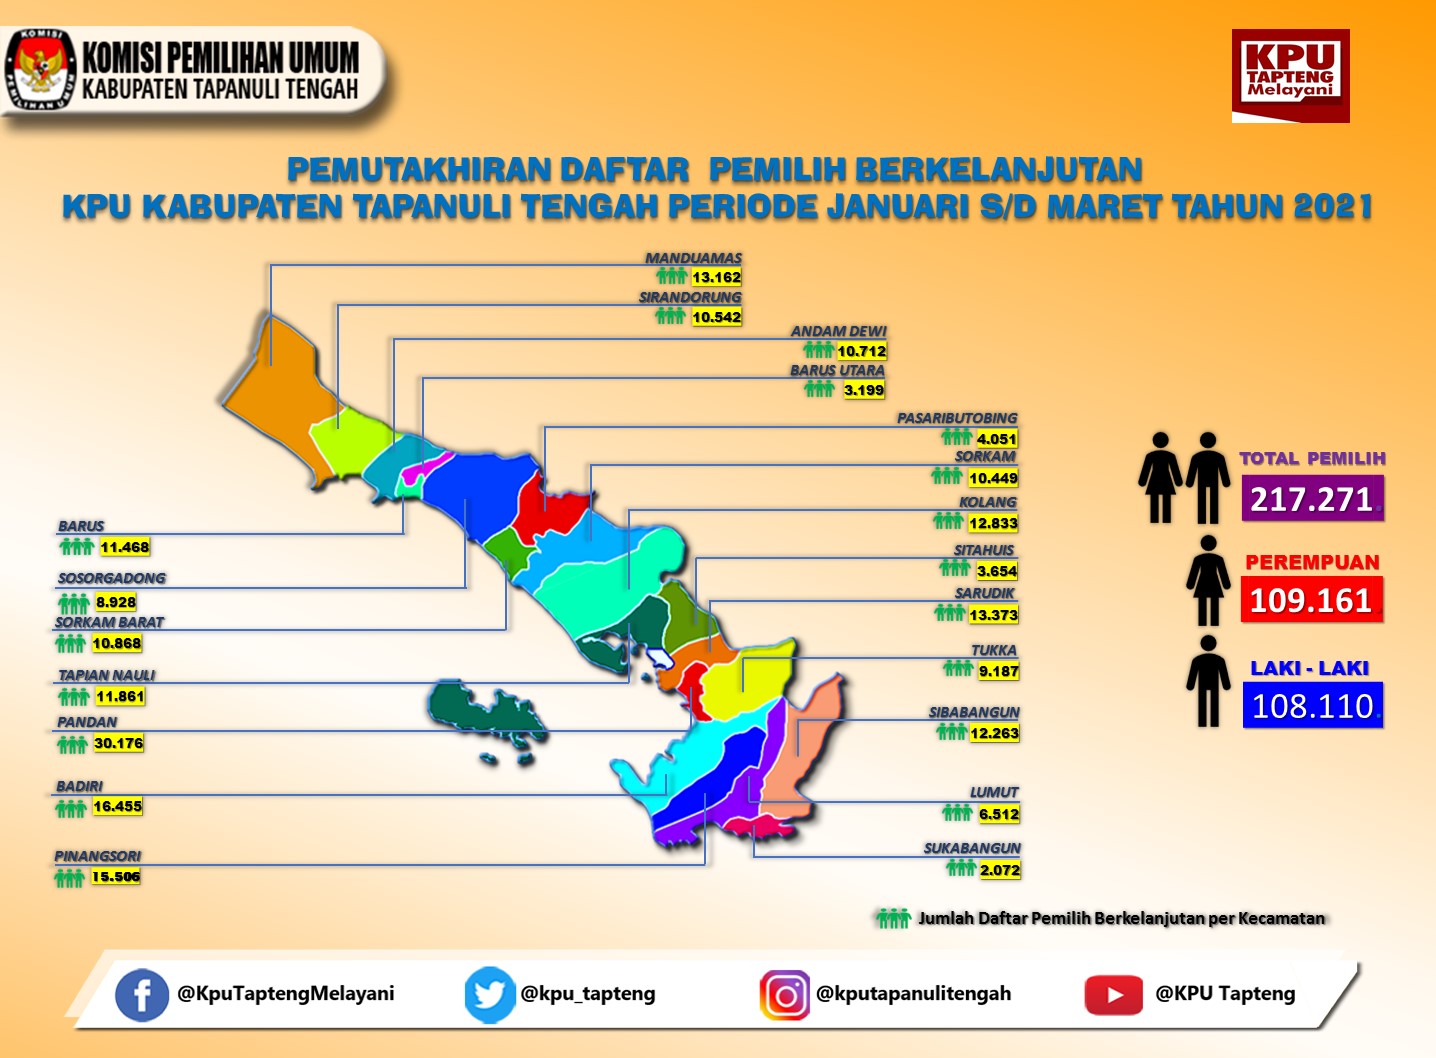 Infografis Daftar Pemilih Berkelanjutan Kabupaten Tapanuli Tengah Periode Januari-Maret 2021